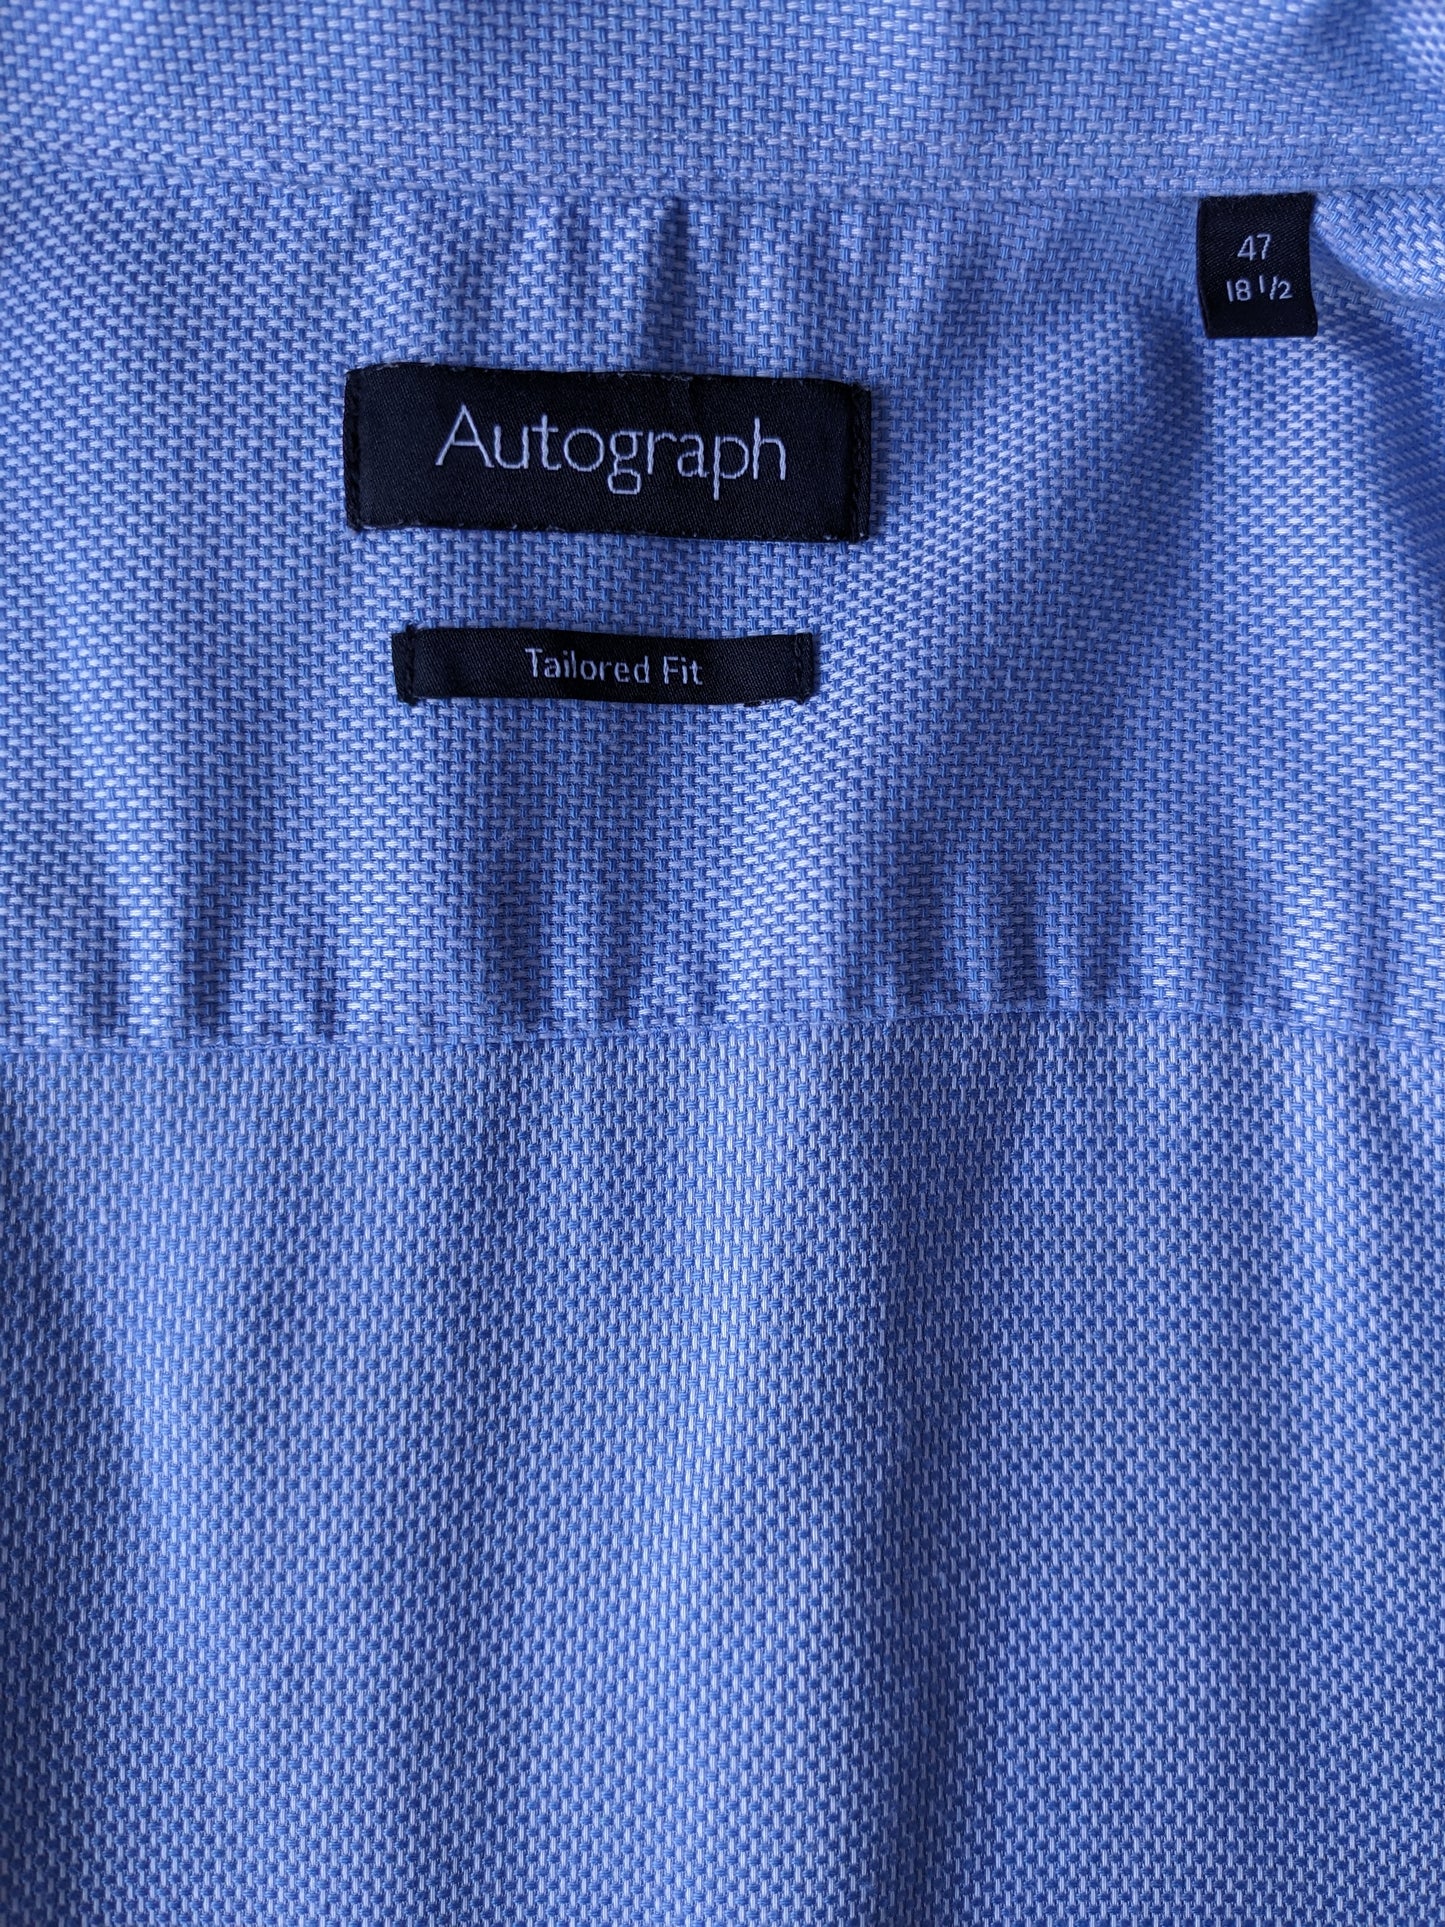 Chemise d'autographe. Motif blanc bleu. Taille 47 / 2xl-xxl. Coupe ajustée.